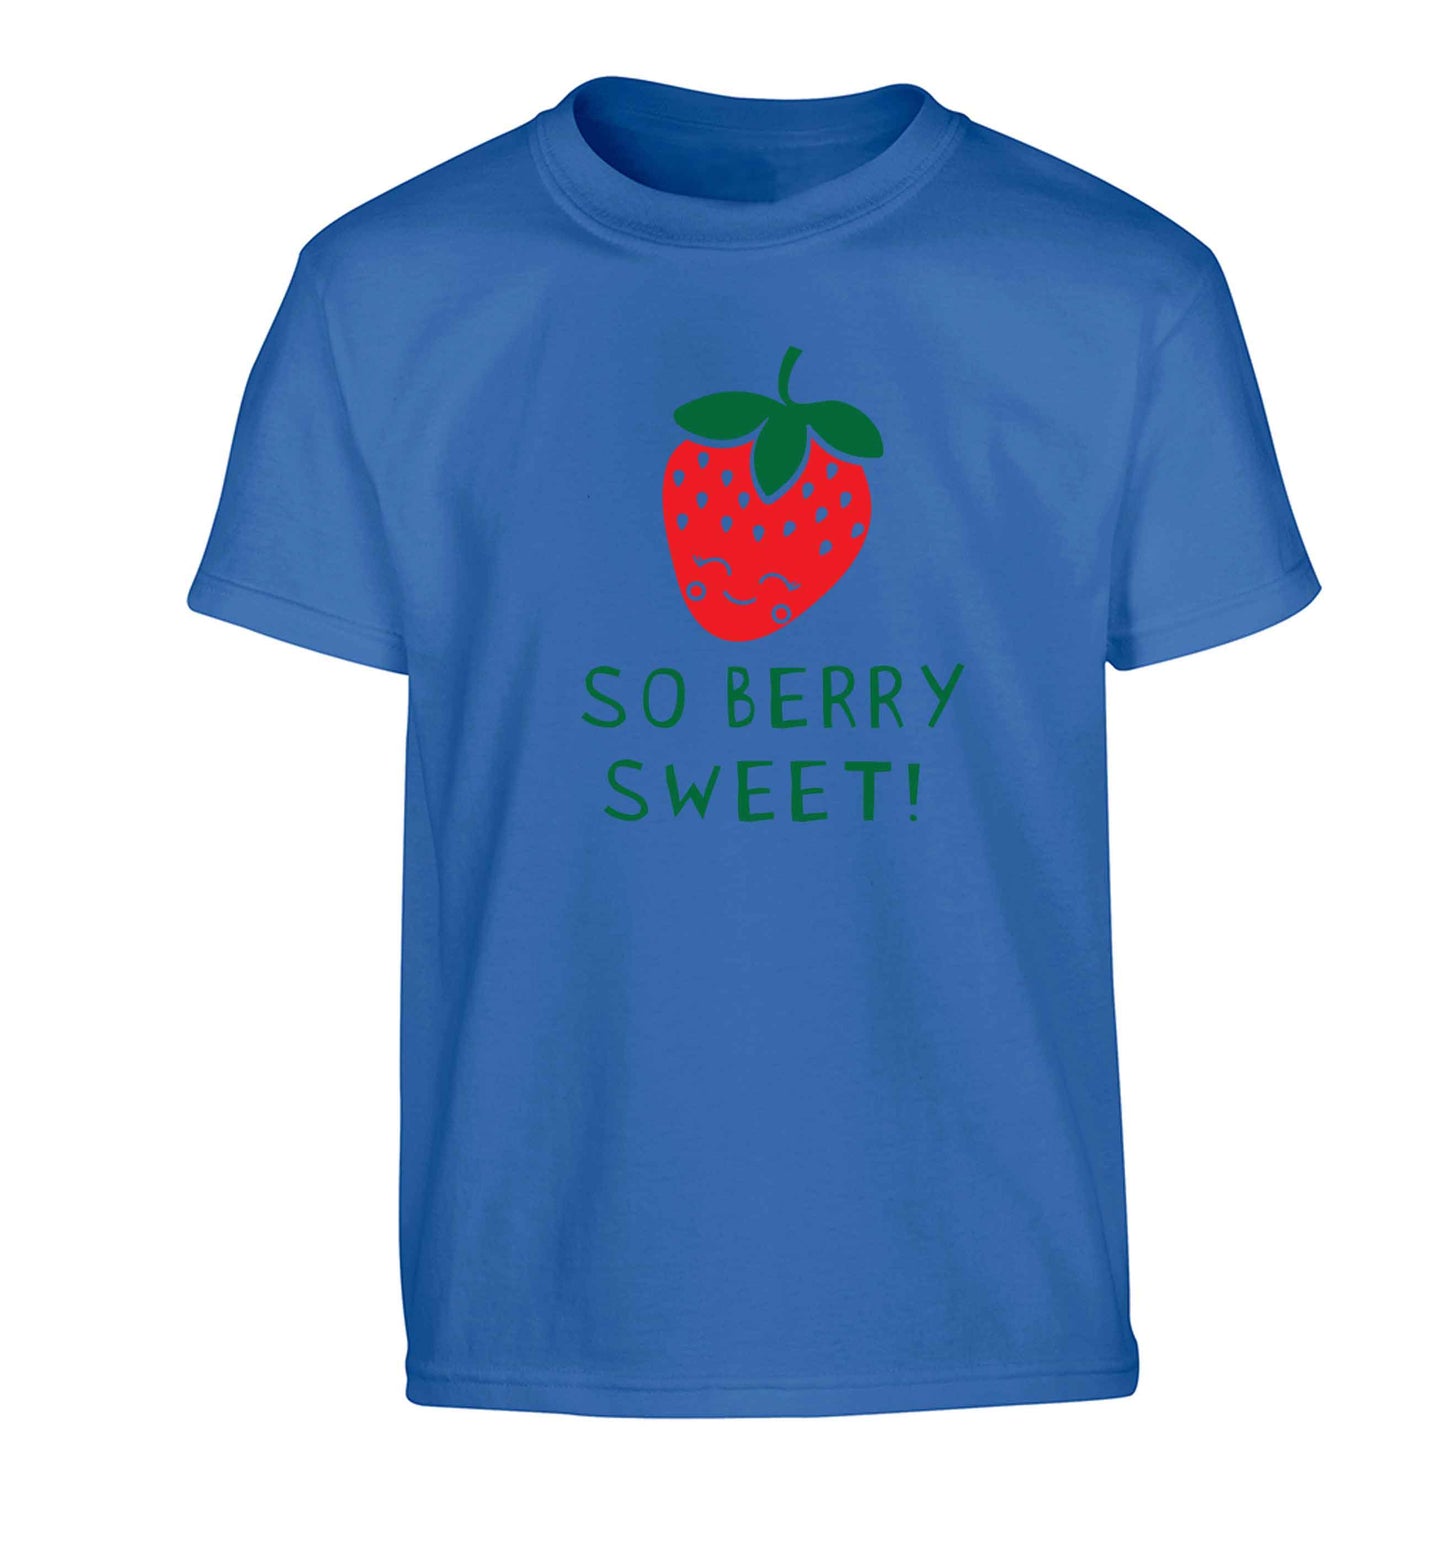 So berry sweet Children's blue Tshirt 12-13 Years